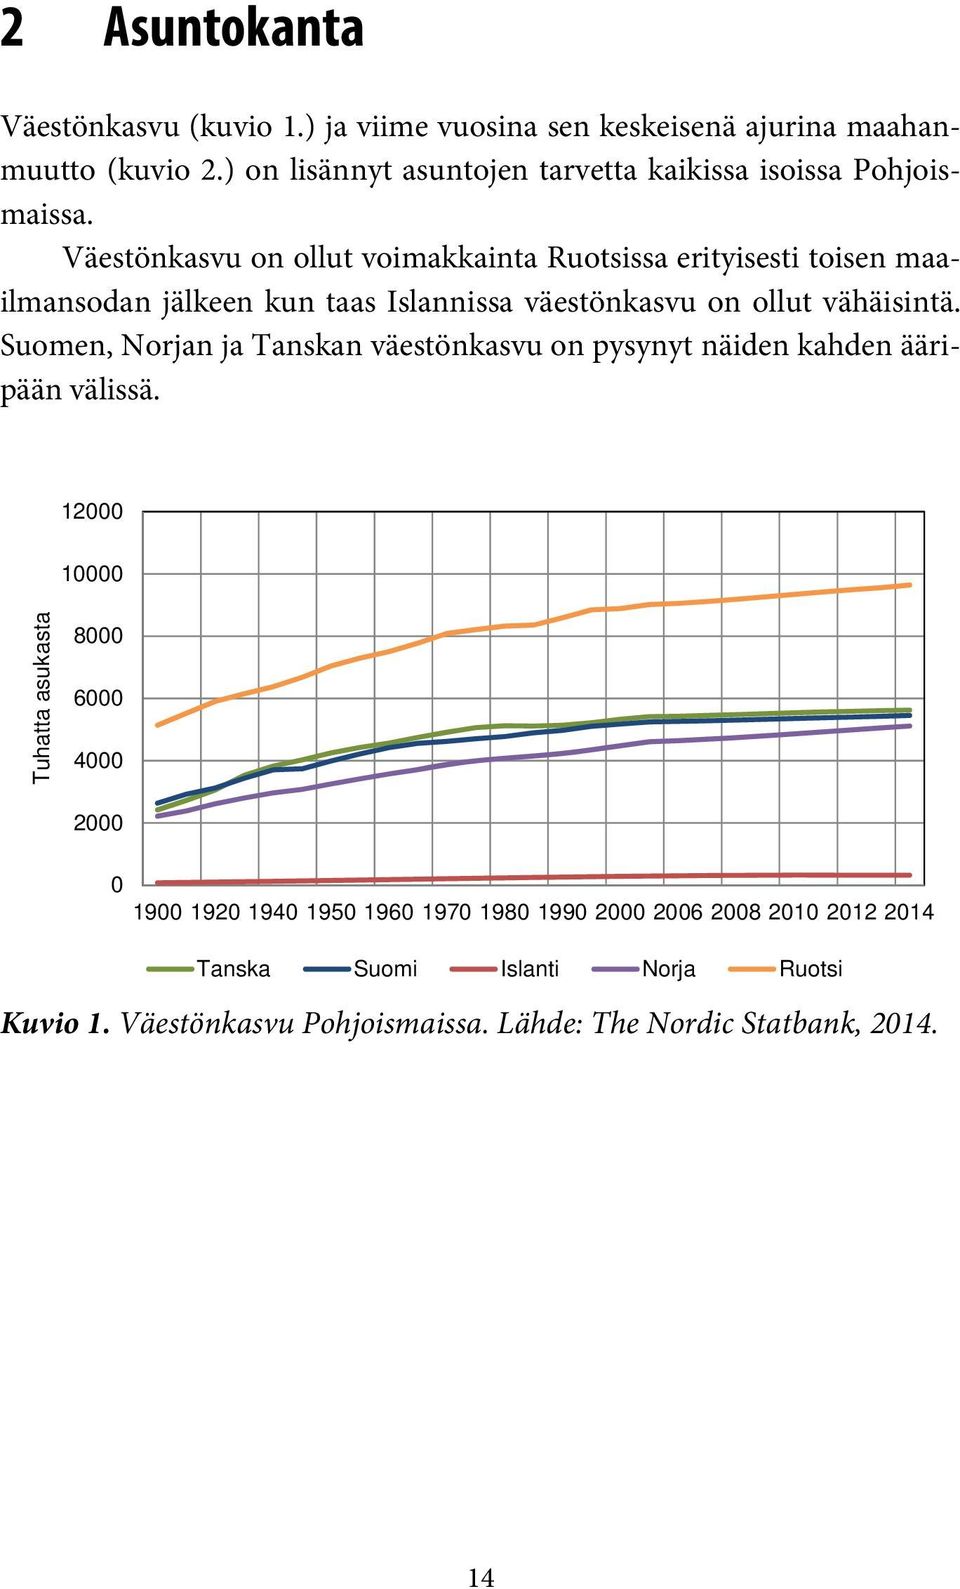 Väestönkasvu on ollut voimakkainta Ruotsissa erityisesti toisen maailmansodan jälkeen kun taas Islannissa väestönkasvu on ollut vähäisintä.